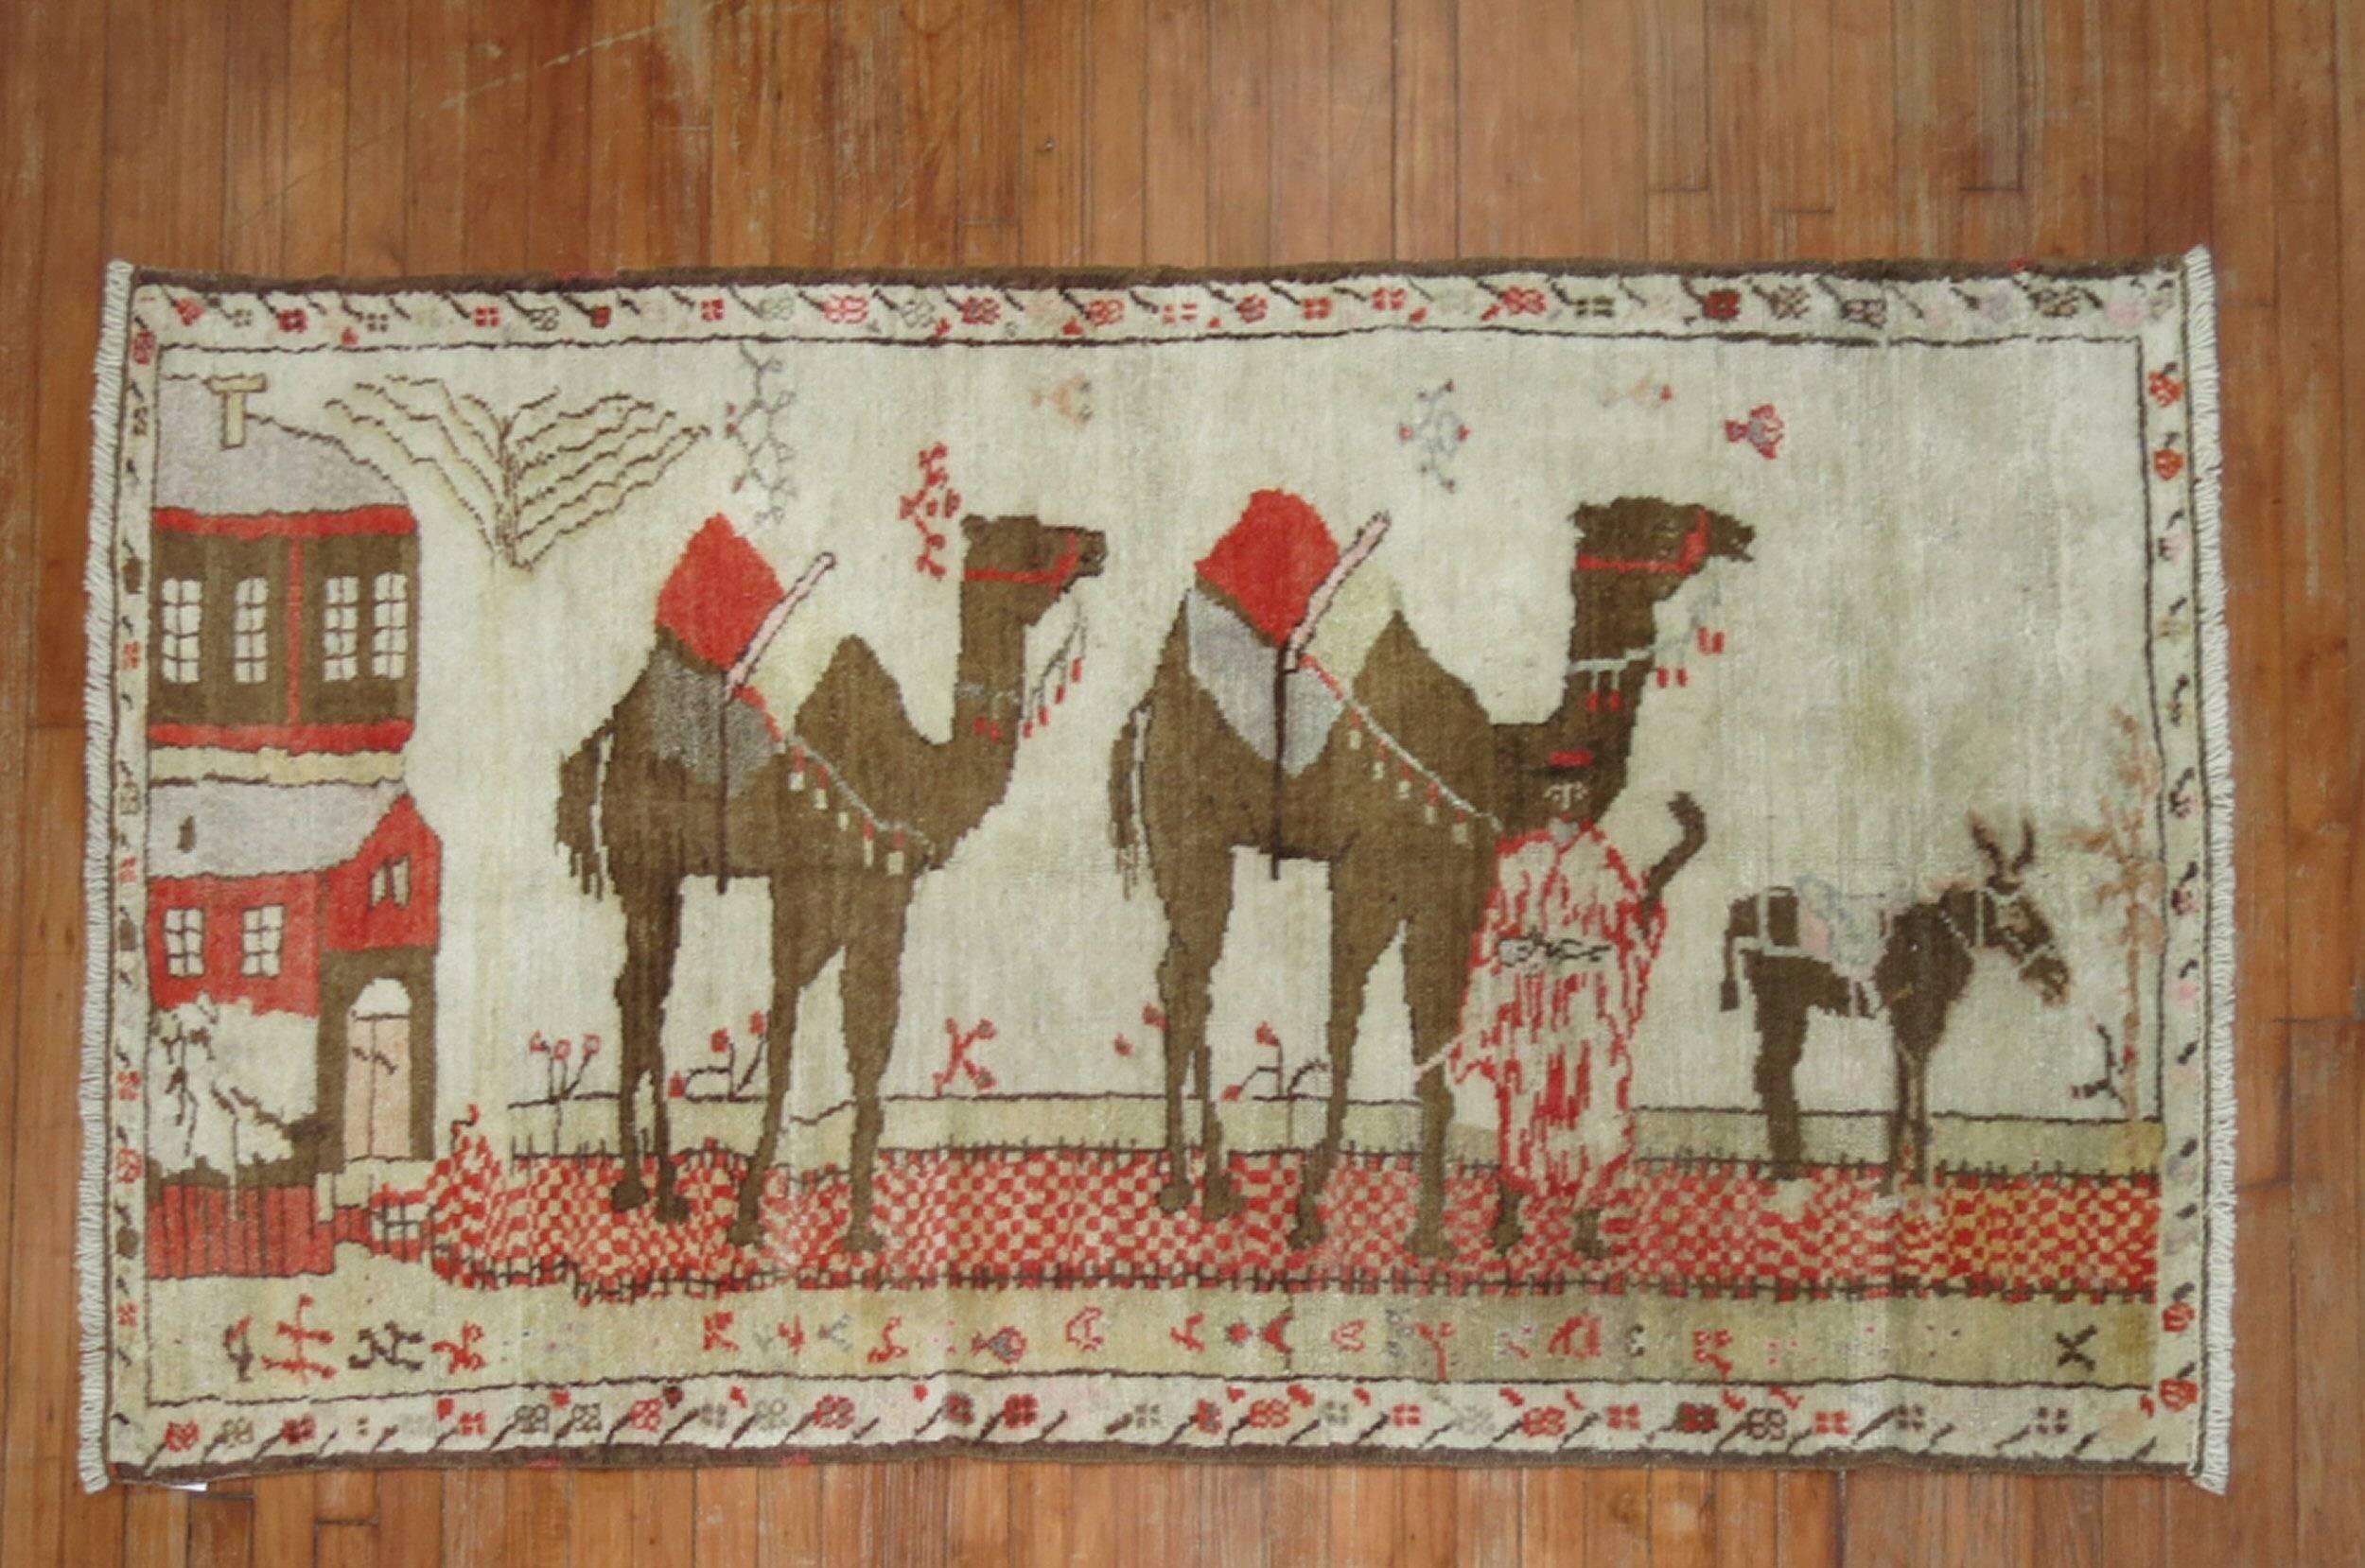 Türkischer Bildteppich, gewebt in der Zentraltürkei, mit zwei großen Kamelen und einem kleinen Pferd.

3'6'' x 6'4''